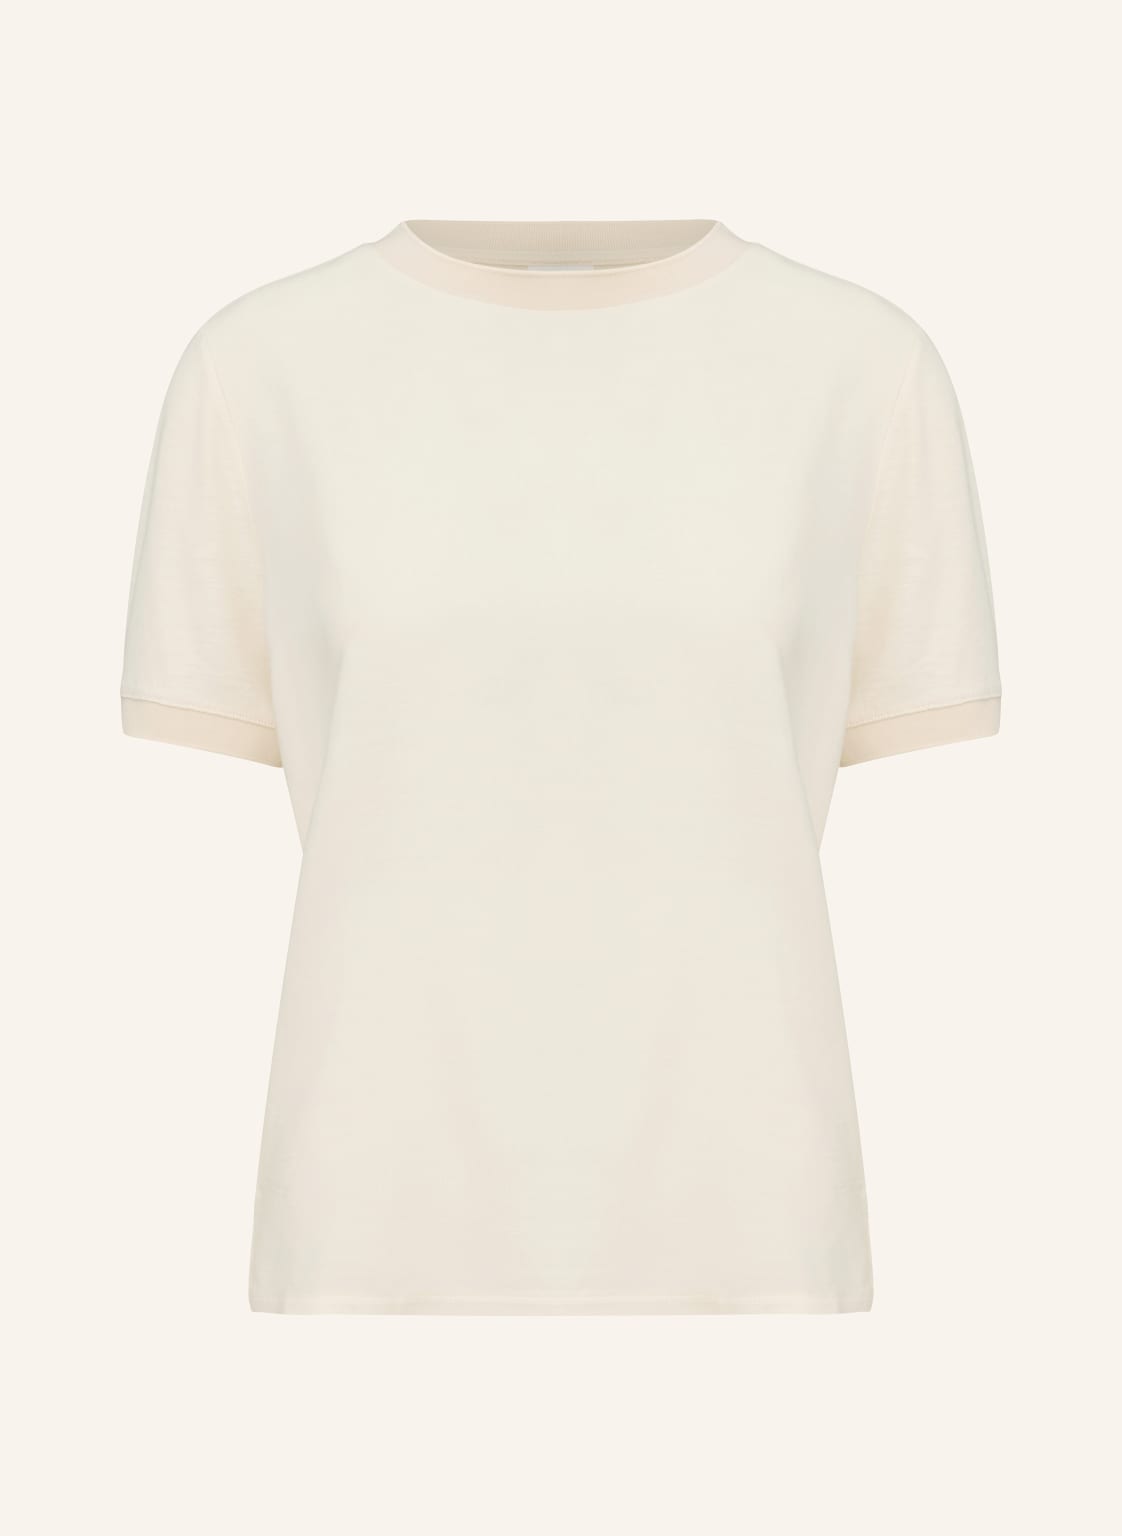 Comma Casual Identity T-Shirt beige von comma casual identity